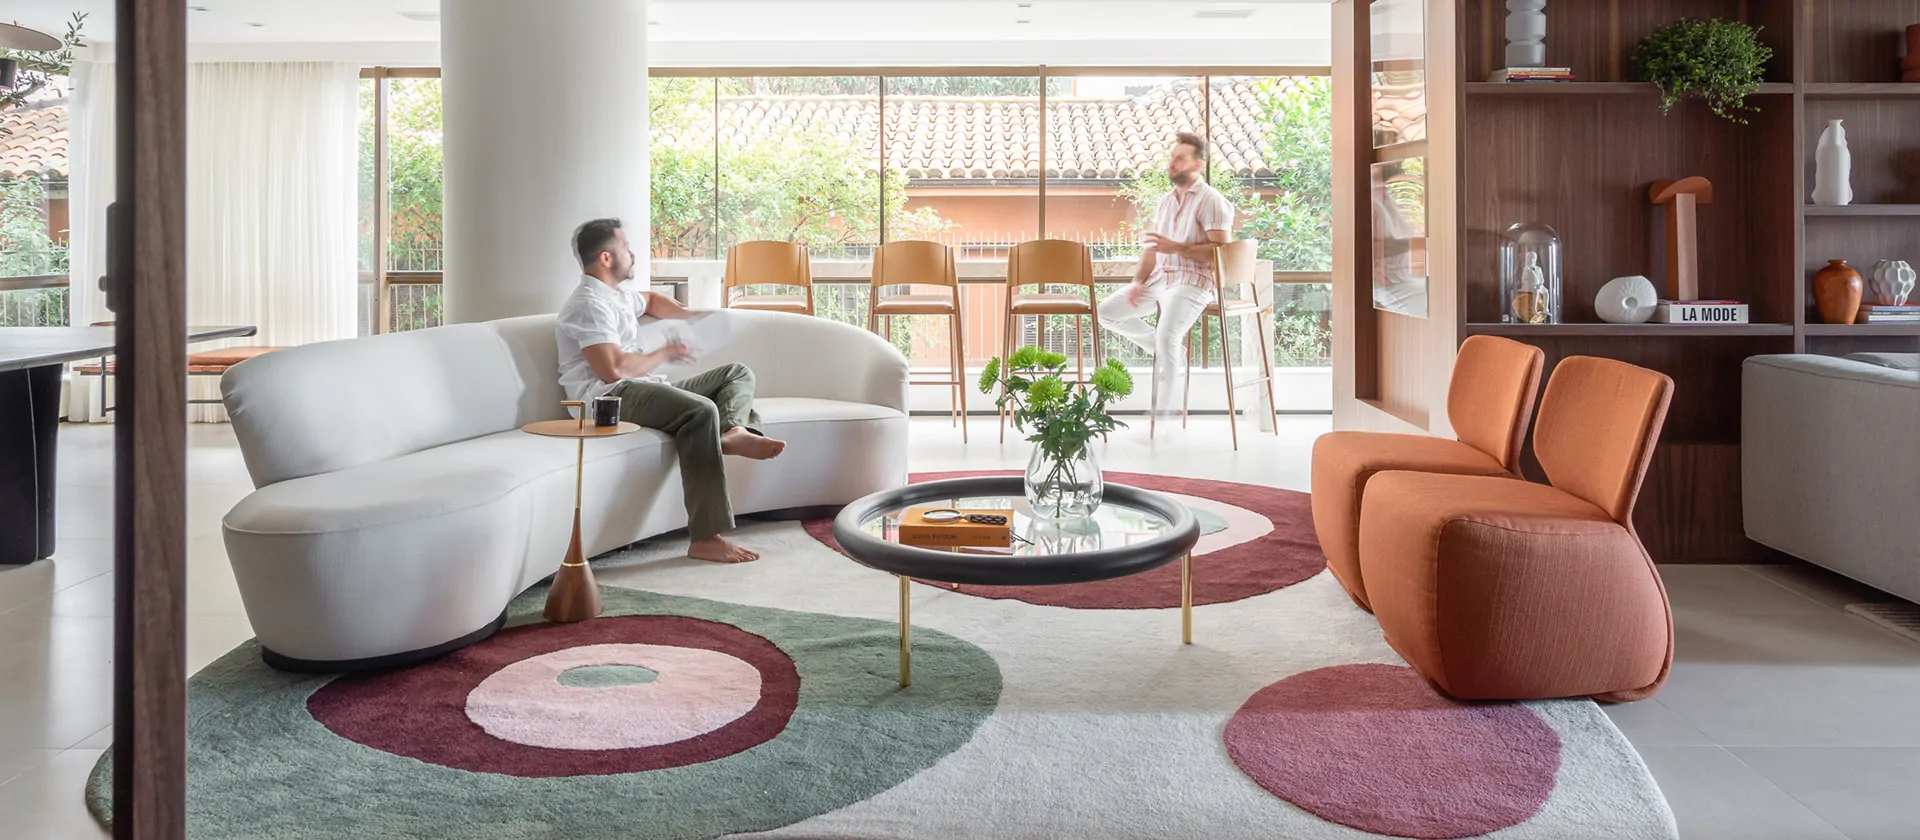 Sala com varanda integrada ganha pontos de cor e sofá curvo